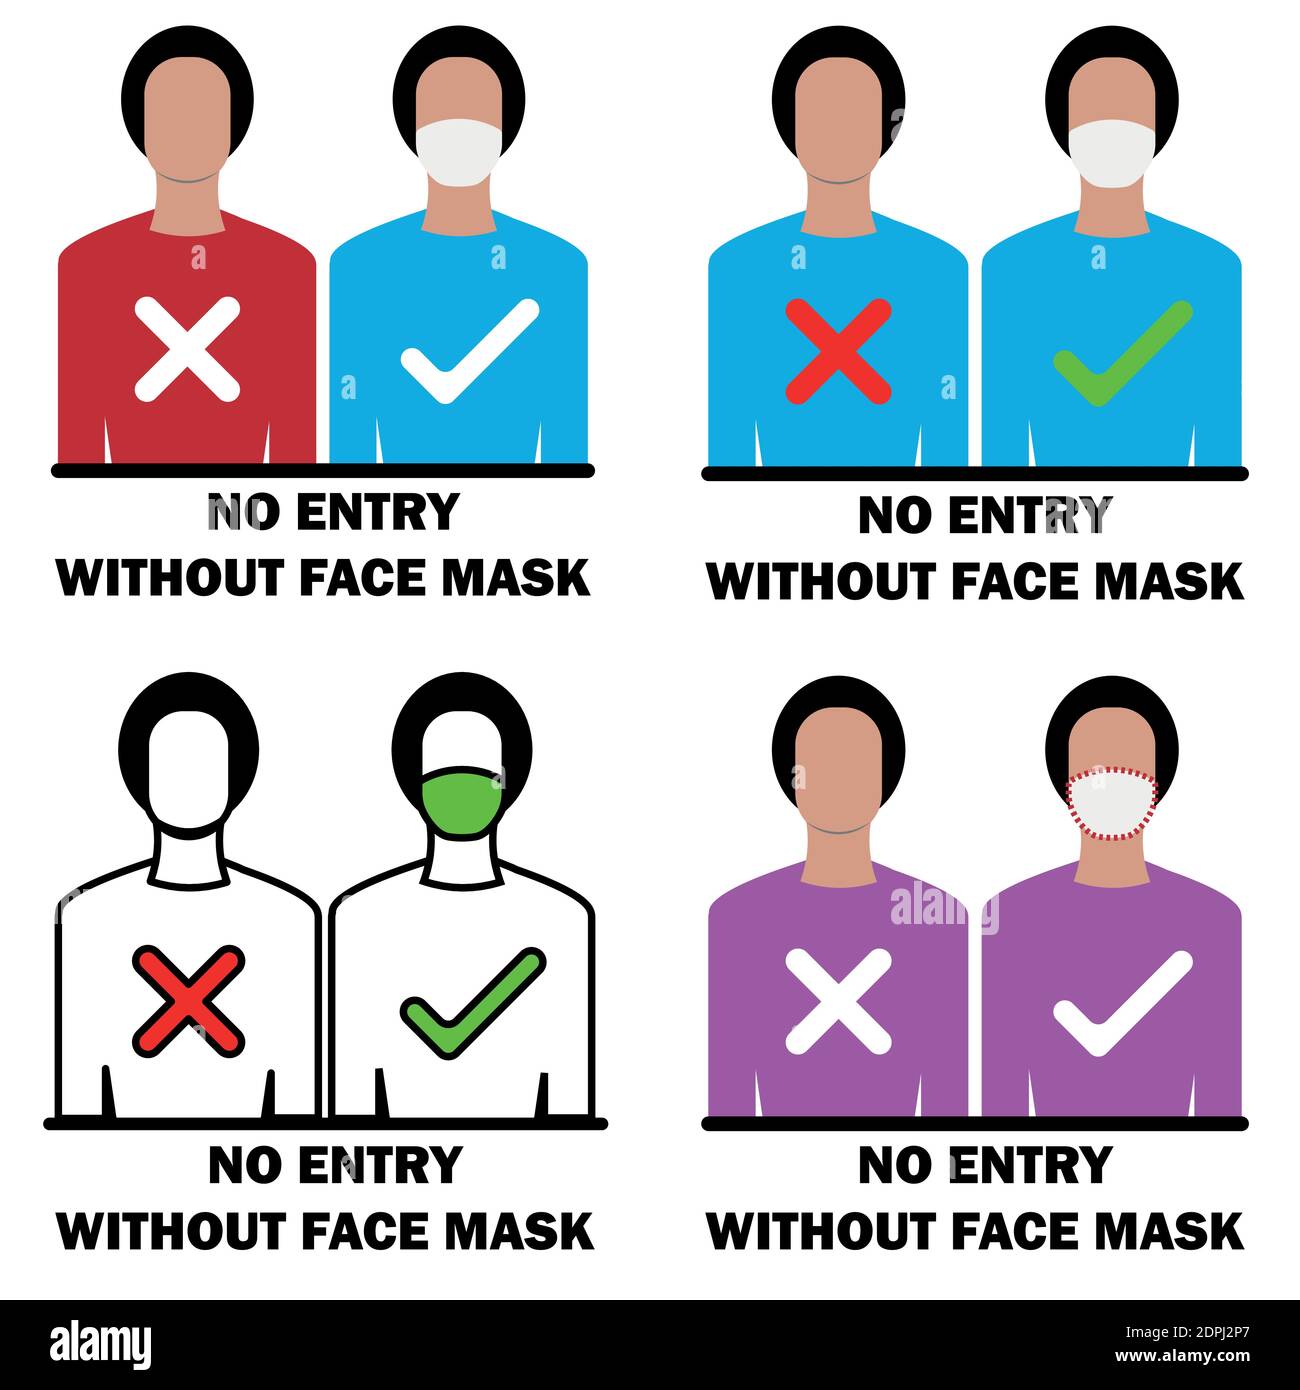 Kein Eintrag ohne Sicherheitsüberprüfung der Gesichtsmaske kann bearbeitet werden vektorgrafik Stock Vektor